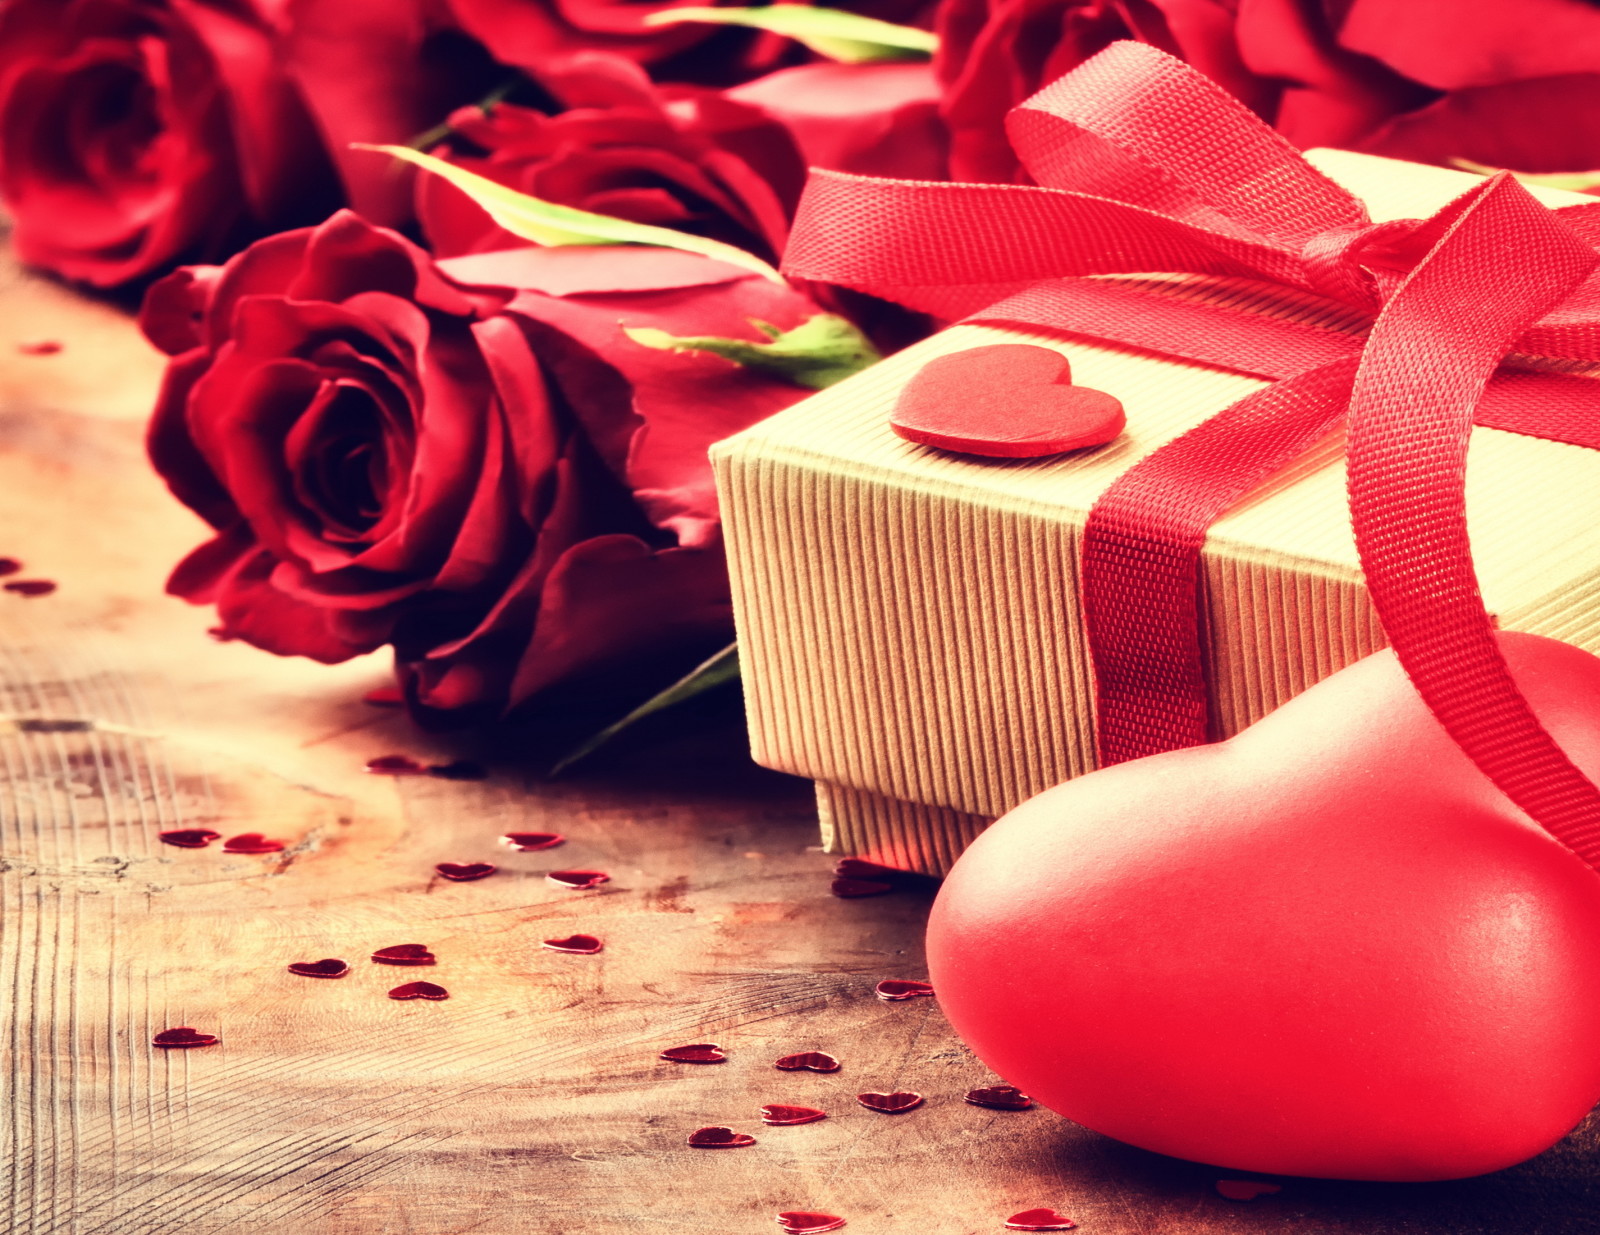 yêu và quý, lãng mạn, ngày lễ tình nhân, quà tặng, hoa hồng, tim